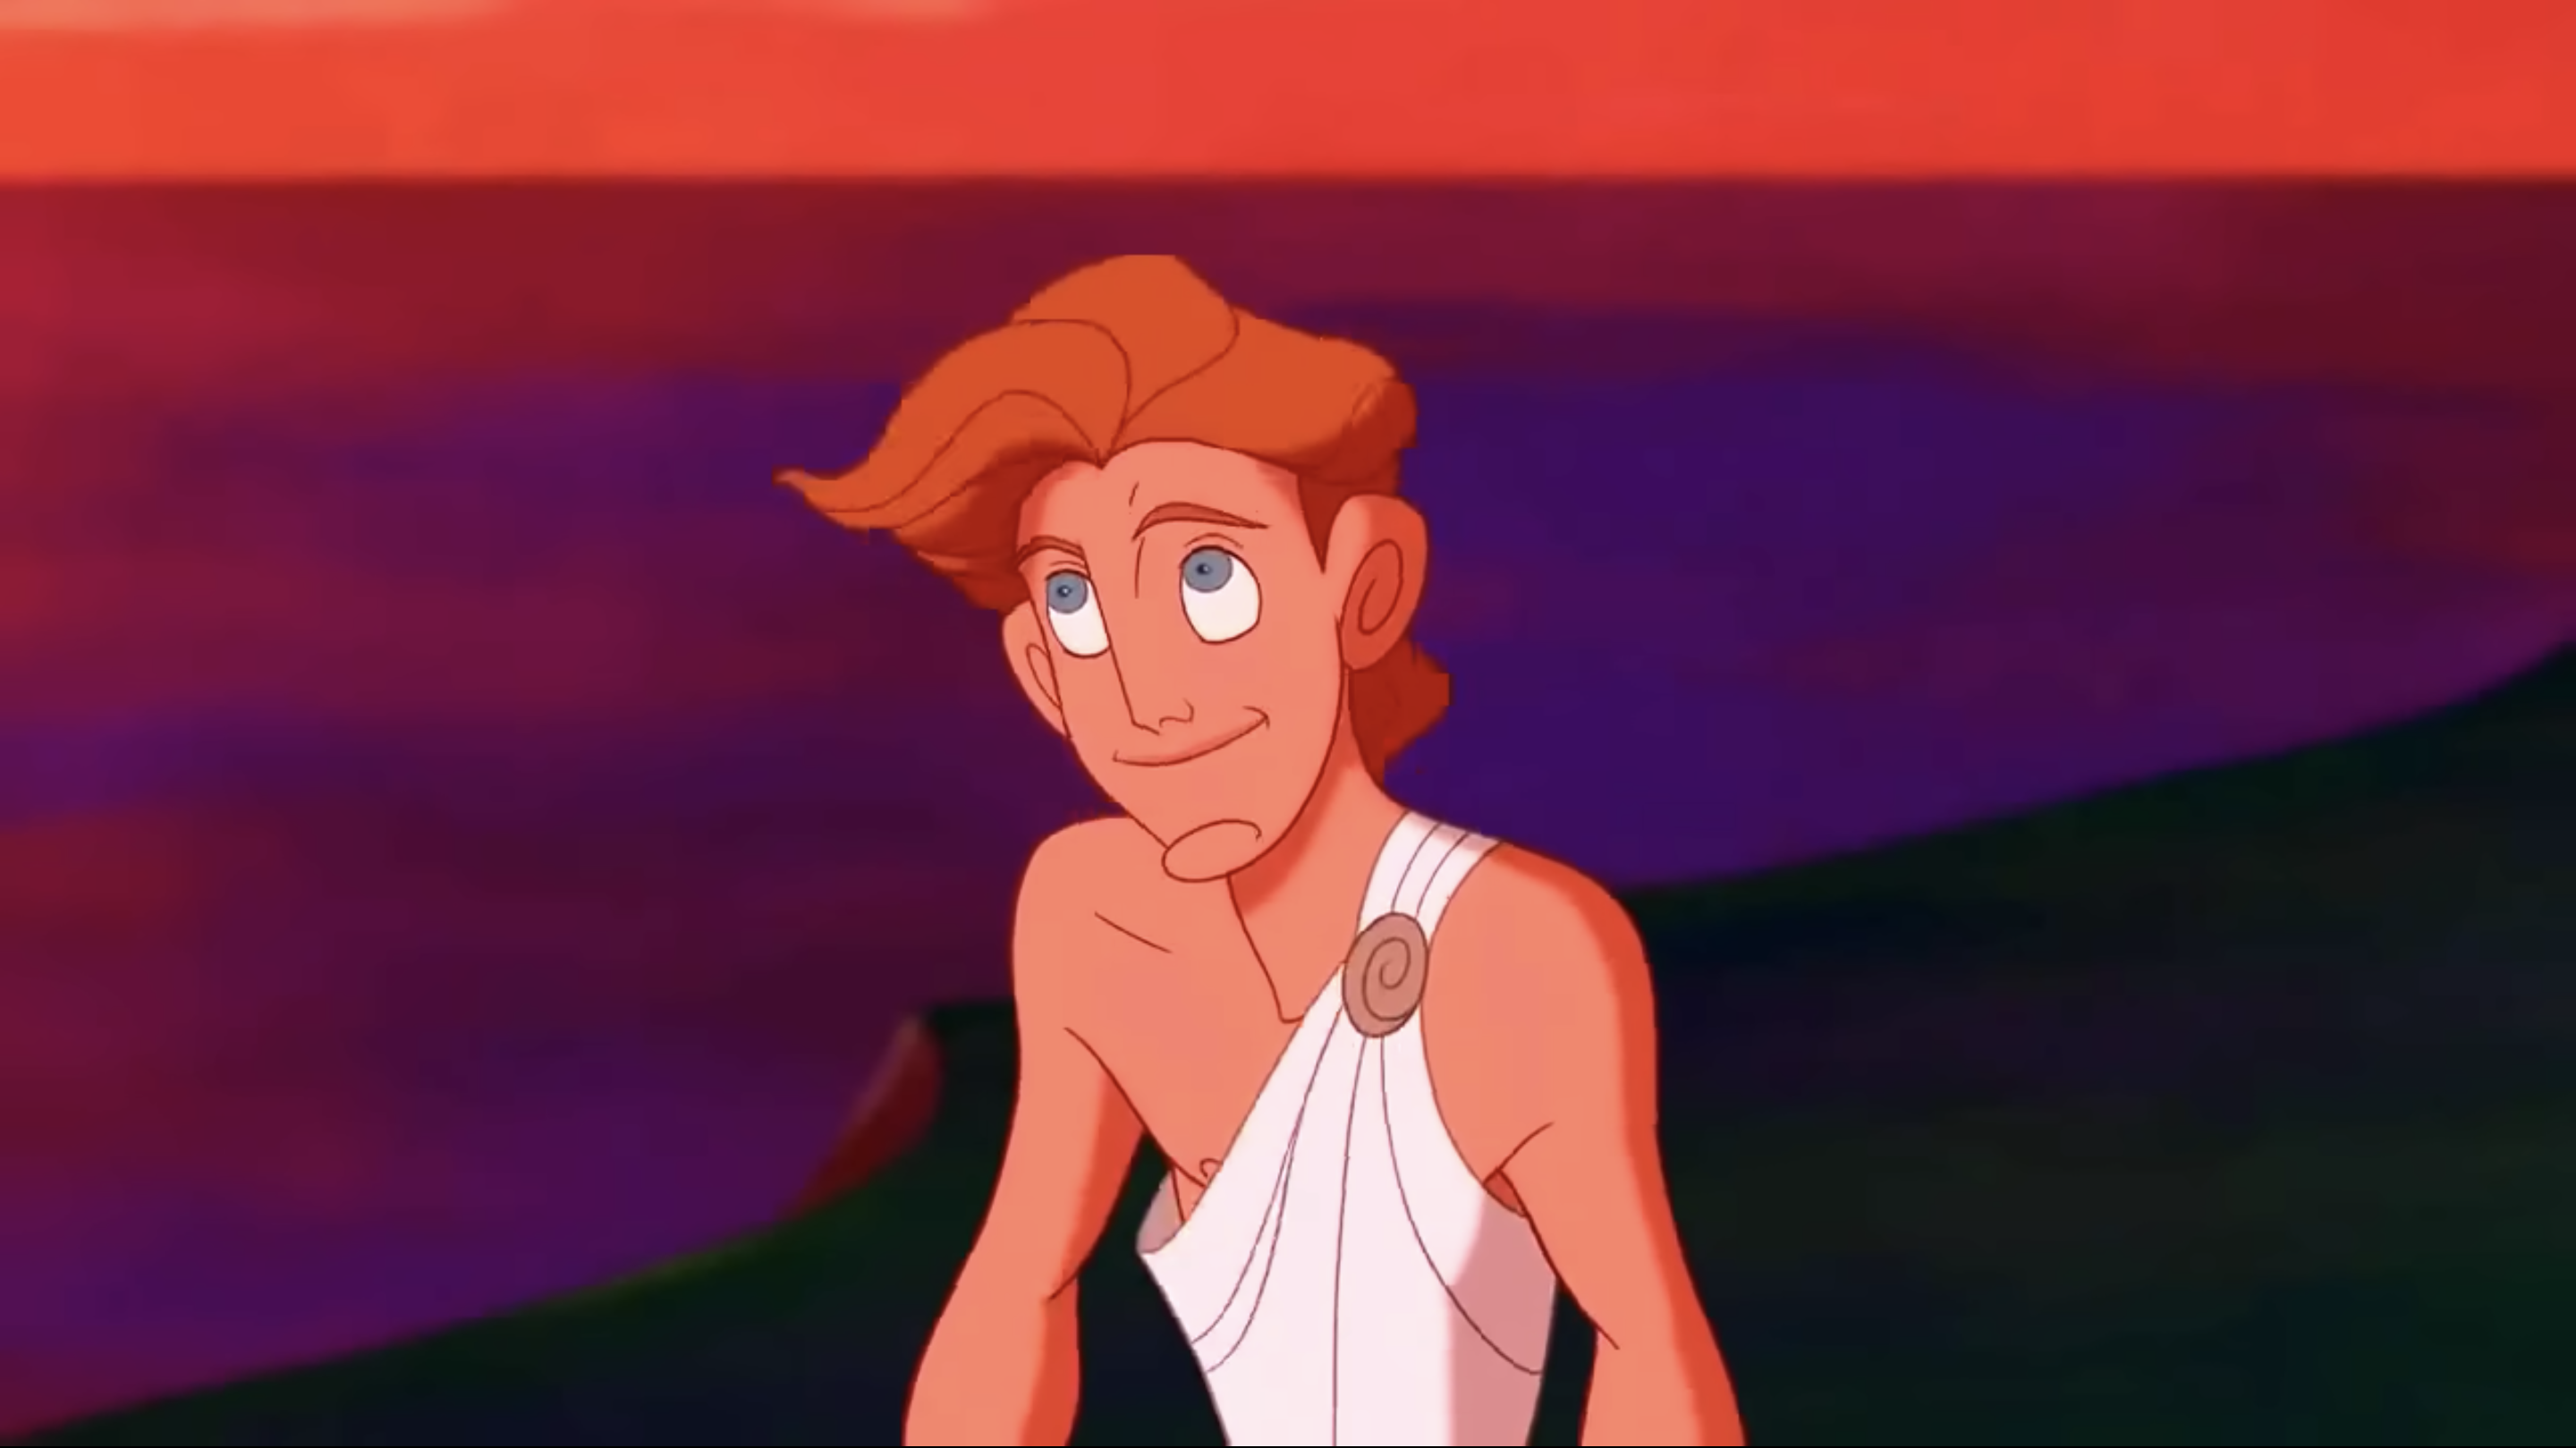 Hercules smiling in a toga